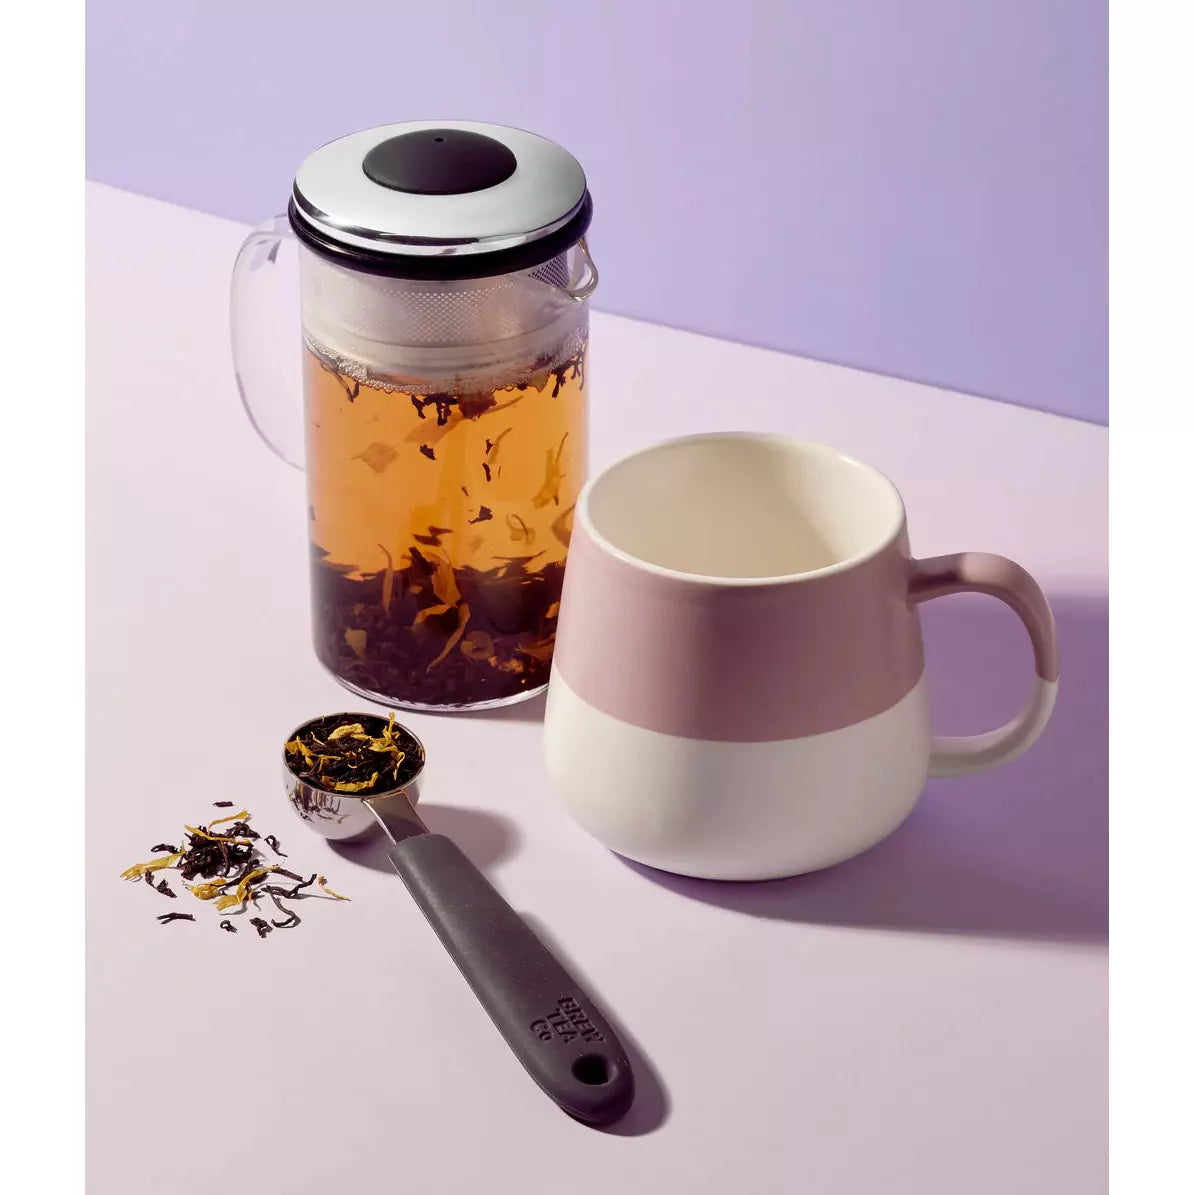 Brew Tea Co - Earl Grey Loose Leaf Tea